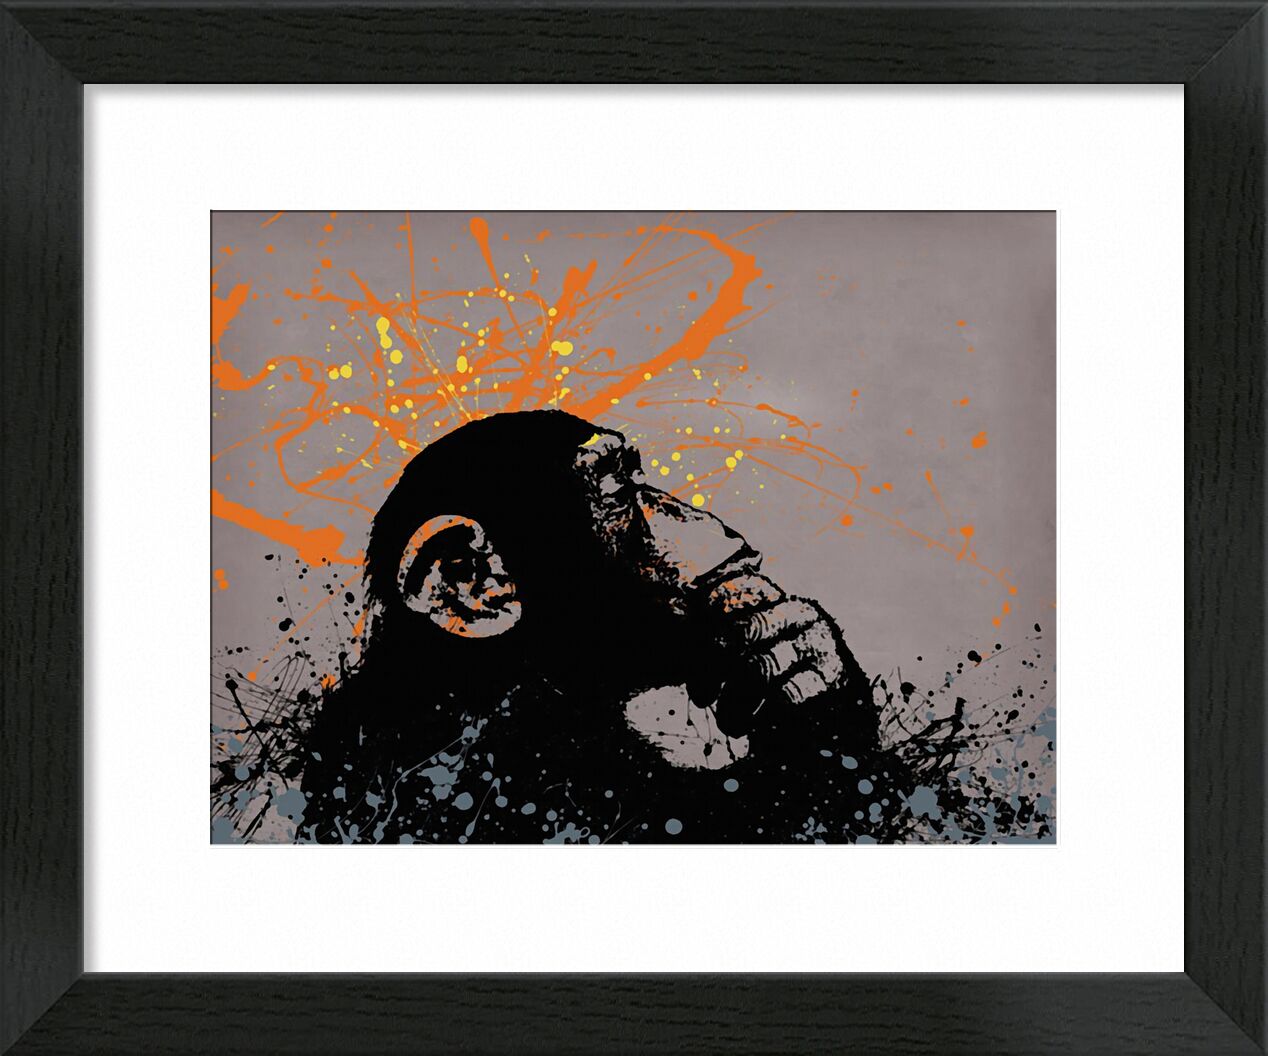 Thinker monkey - BANKSY von Bildende Kunst, Prodi Art, Grafik, Affe, banksy, Graffiti, Straßenkunst